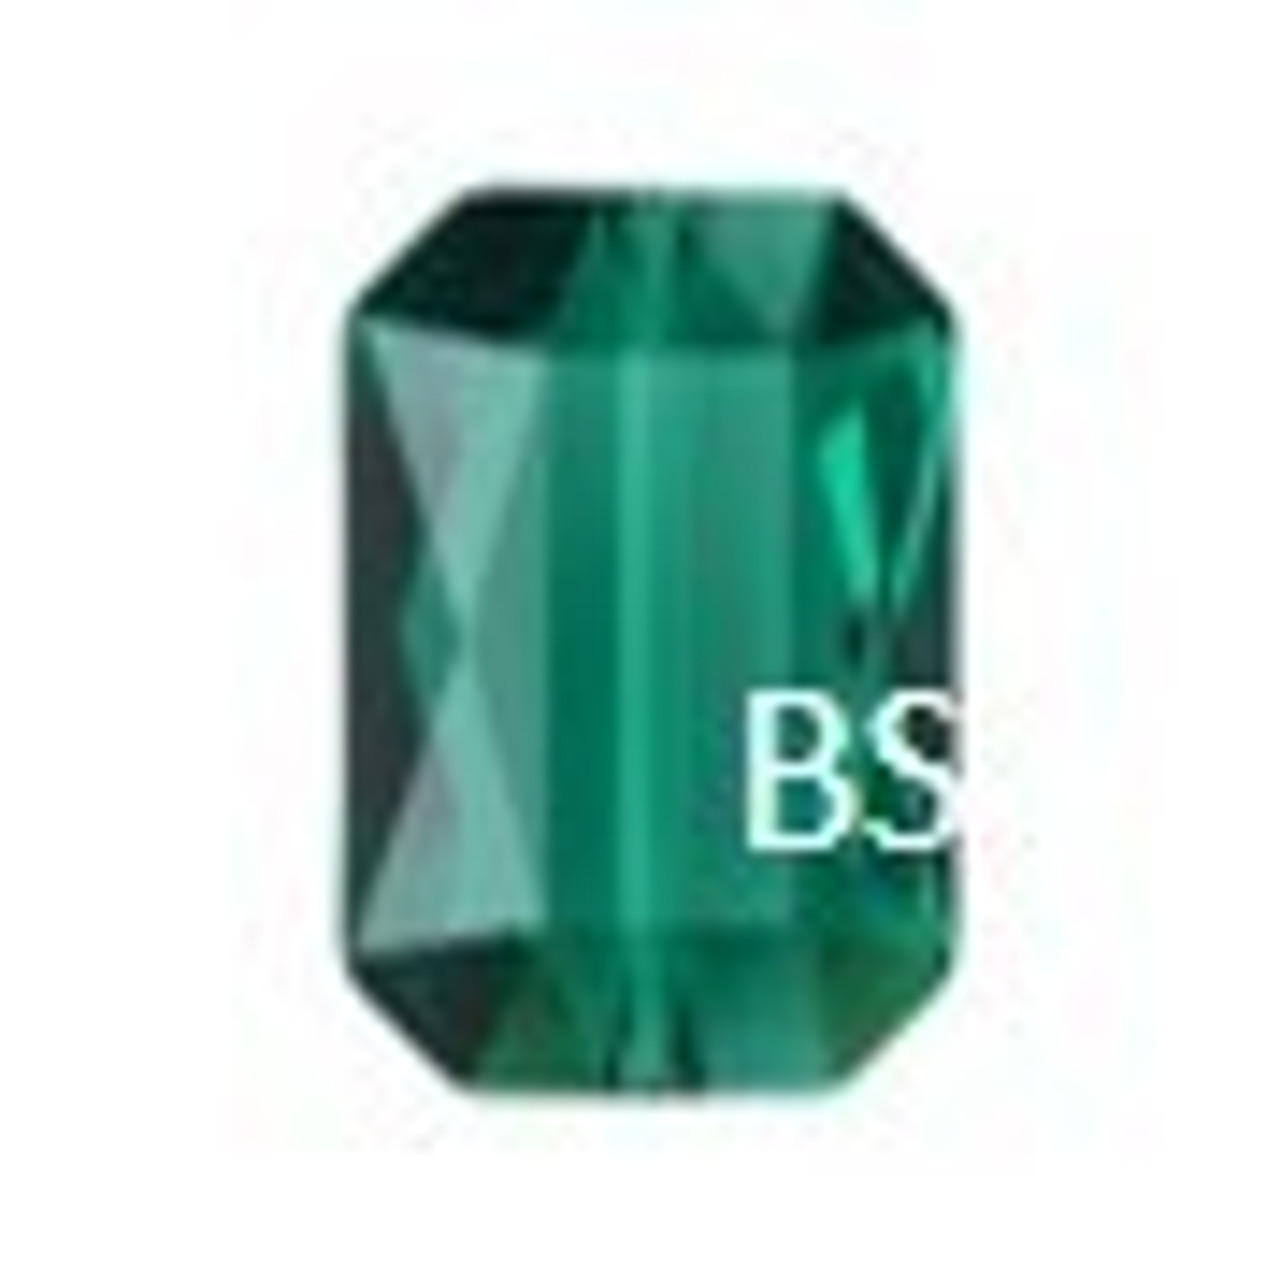 5515 Emerald Cut Bead